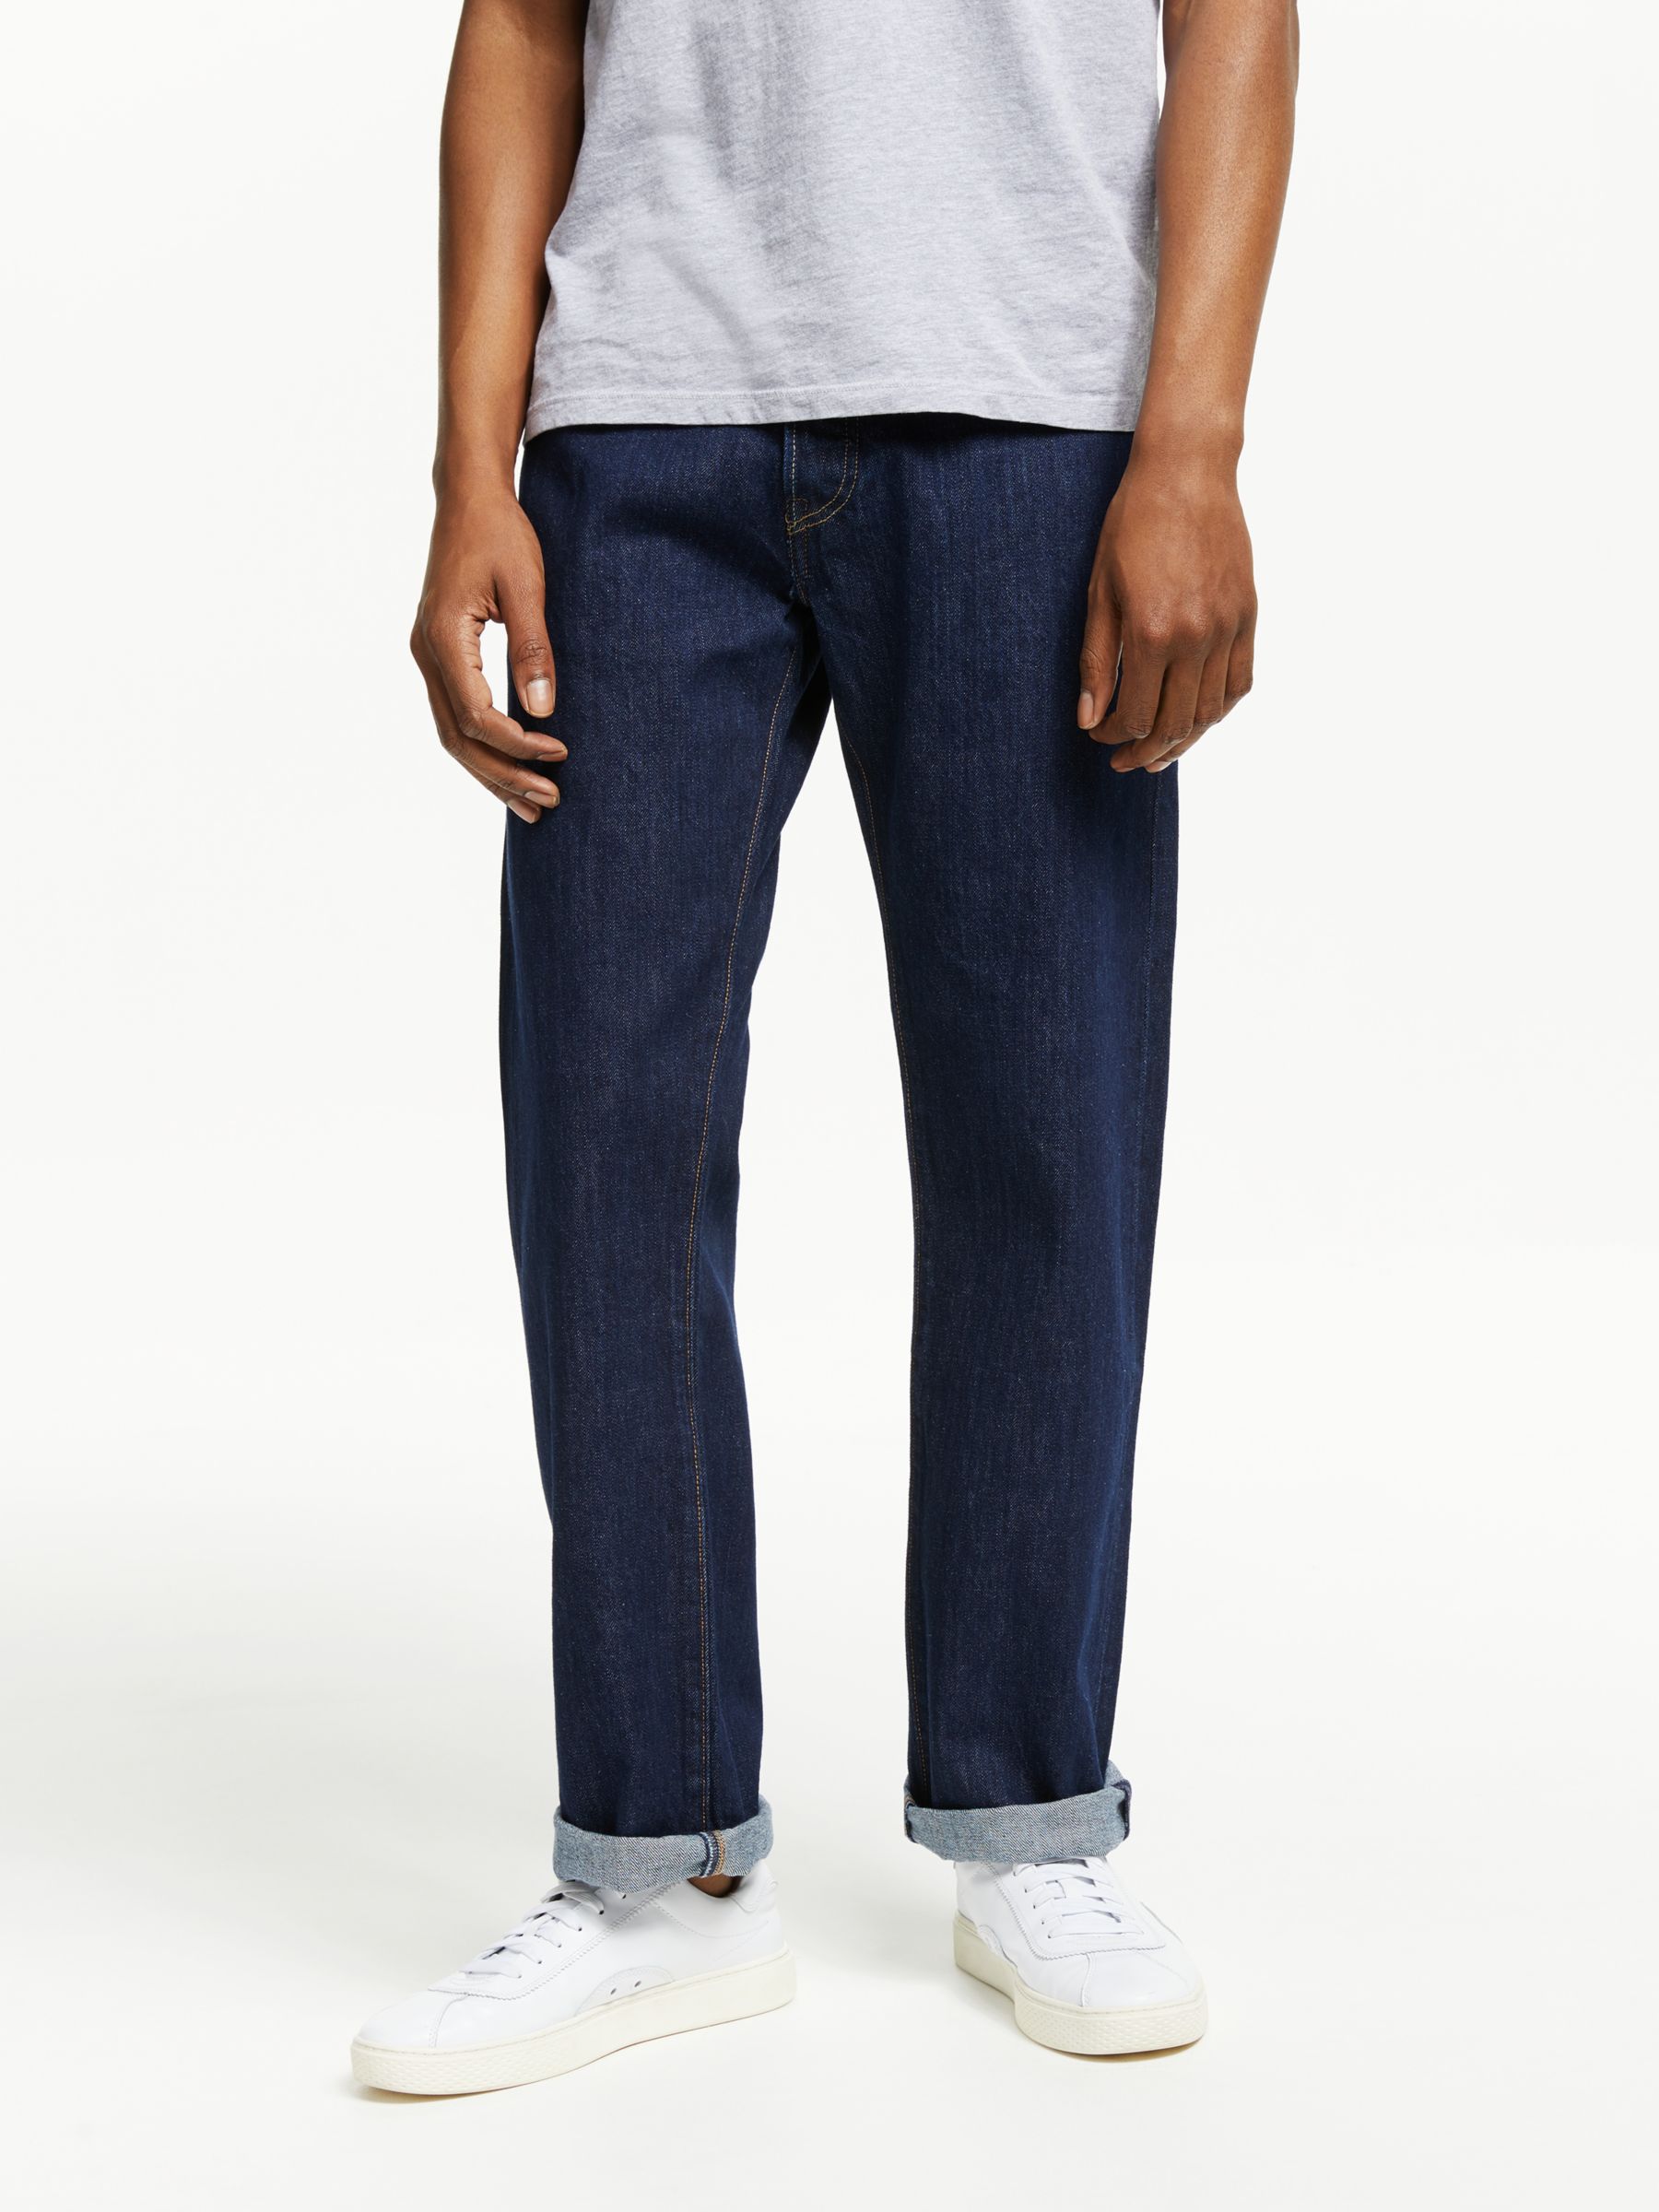 Men's Wrangler Jeans 33 X 30 - Gem